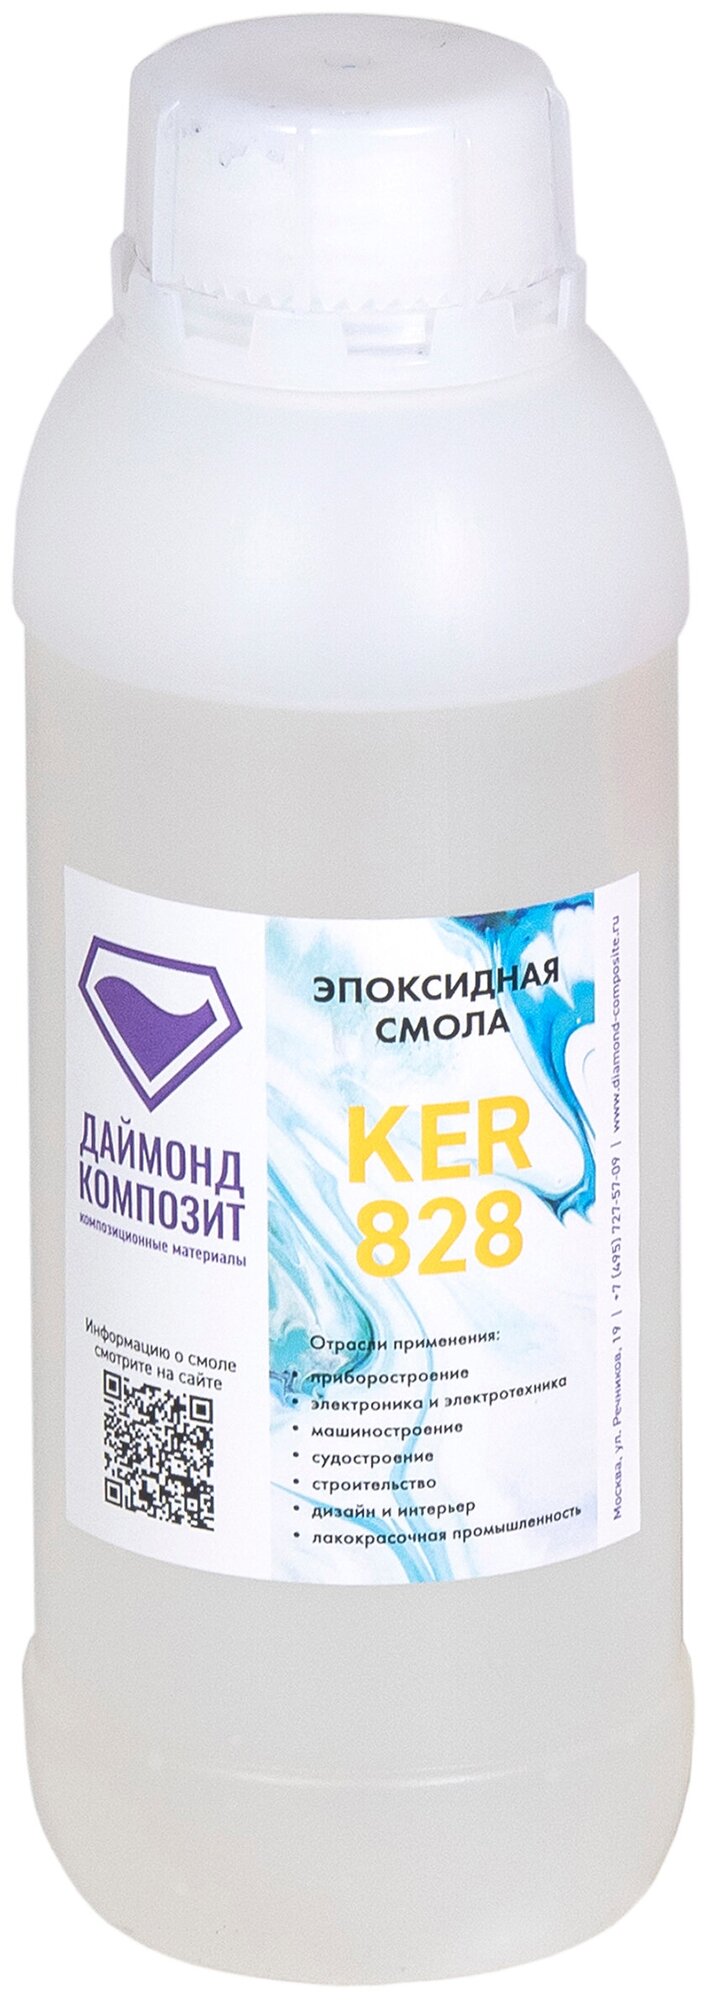 Эпоксидная смола KER 828 (без отвердителя) 500 гр.